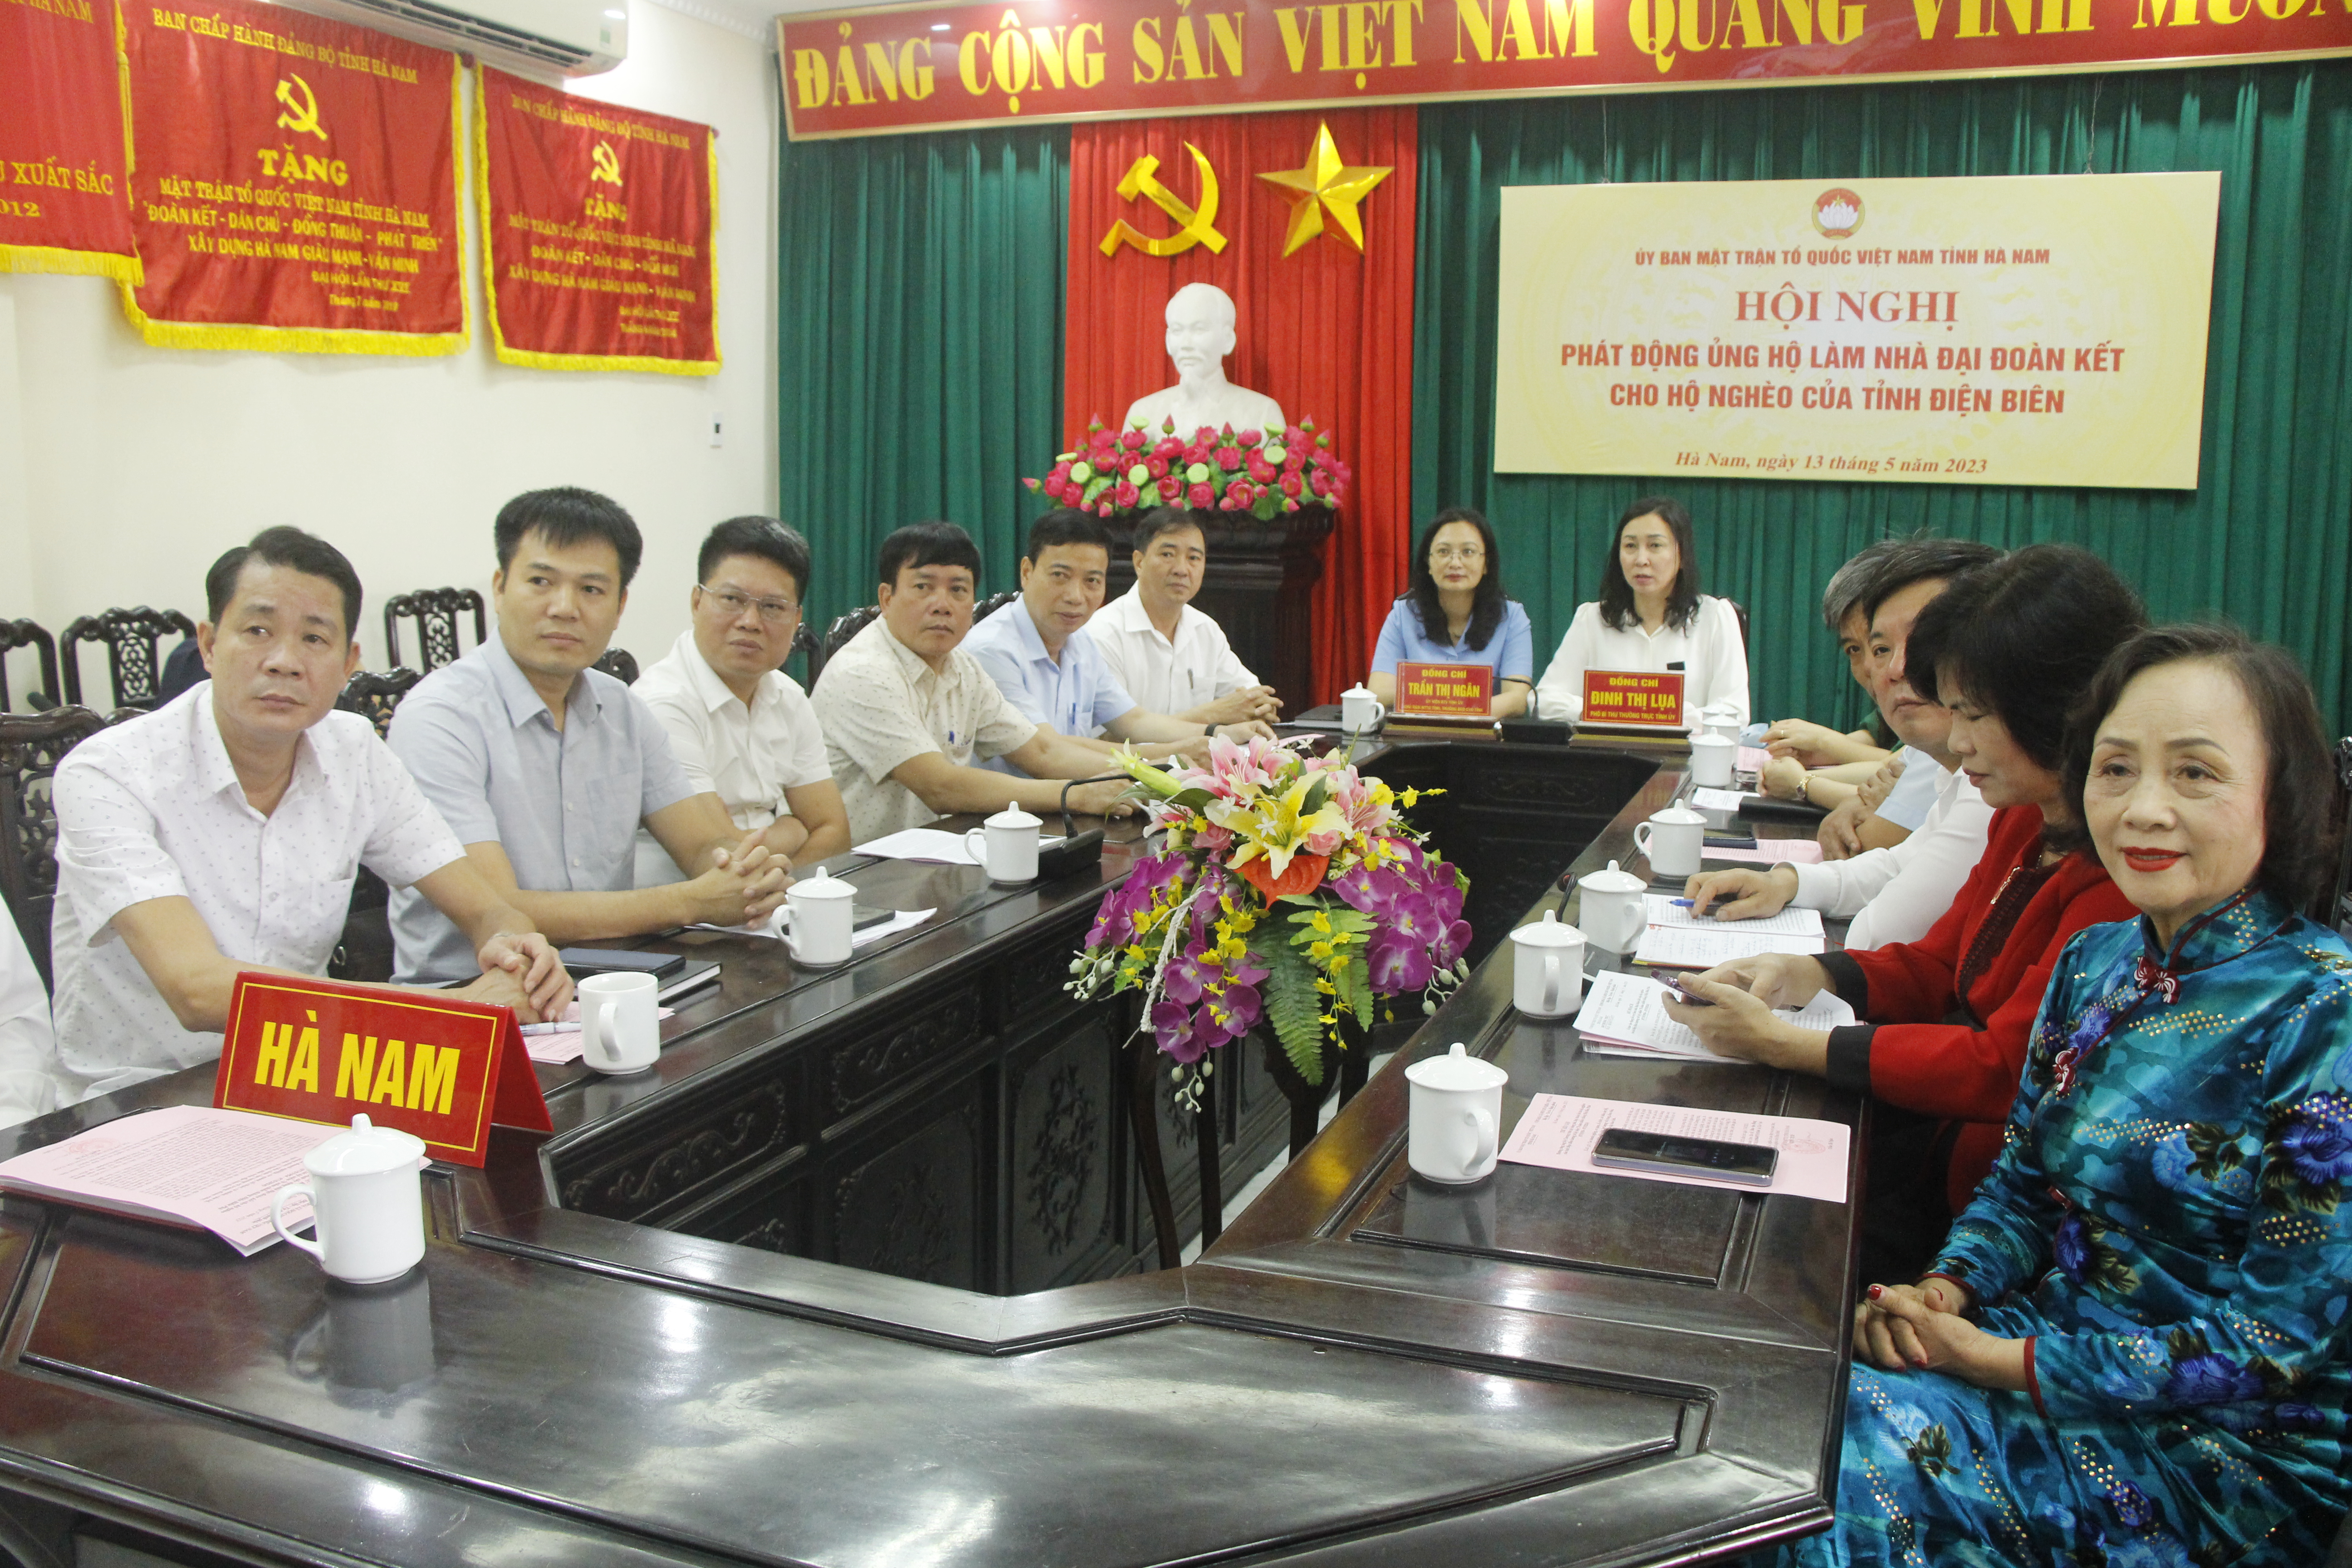 Phát động ủng hộ xây dựng nhà đại đoàn kết cho hộ nghèo của tỉnh Điện Biên